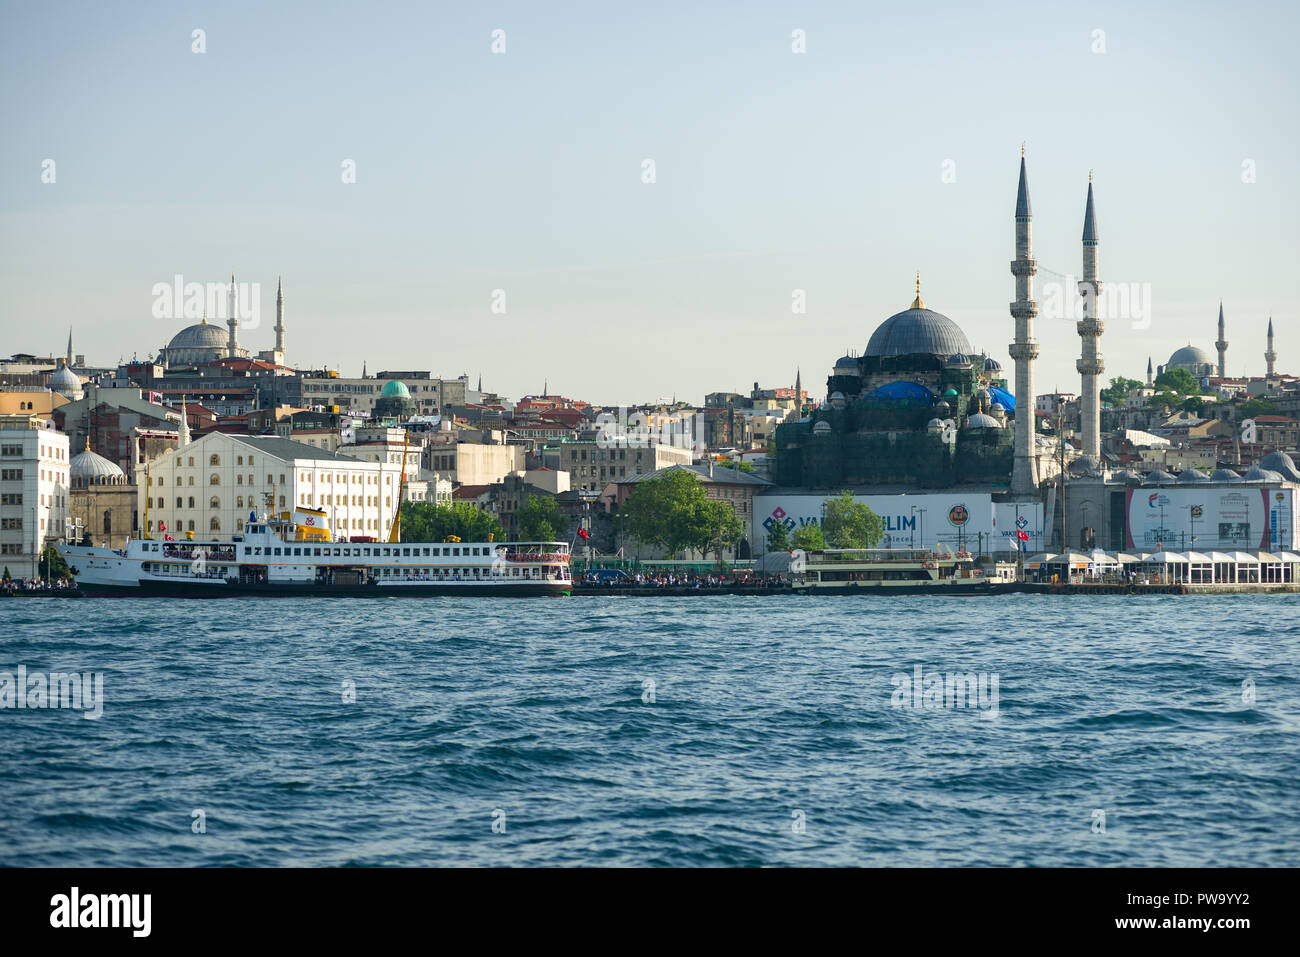 Un grande traghetto ormeggiata al porto di Eminonu sul Golden Horn con moschee e gli edifici in background, Istanbul, Turchia Foto Stock